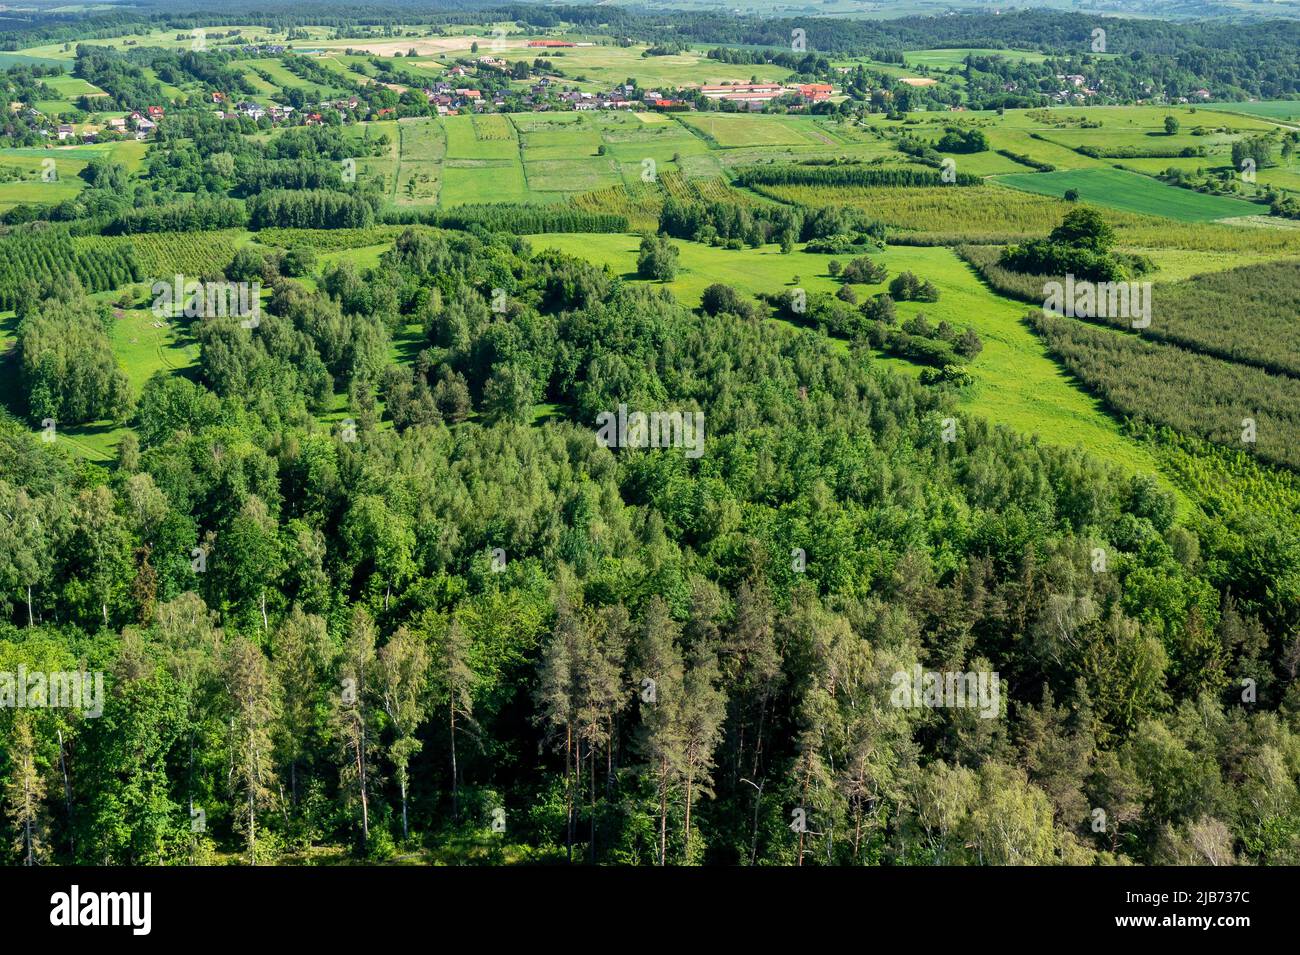 Poland Lesser Voivodeship. Aerial view of village near Krakow, southern Poland. Europe. Stock Photo